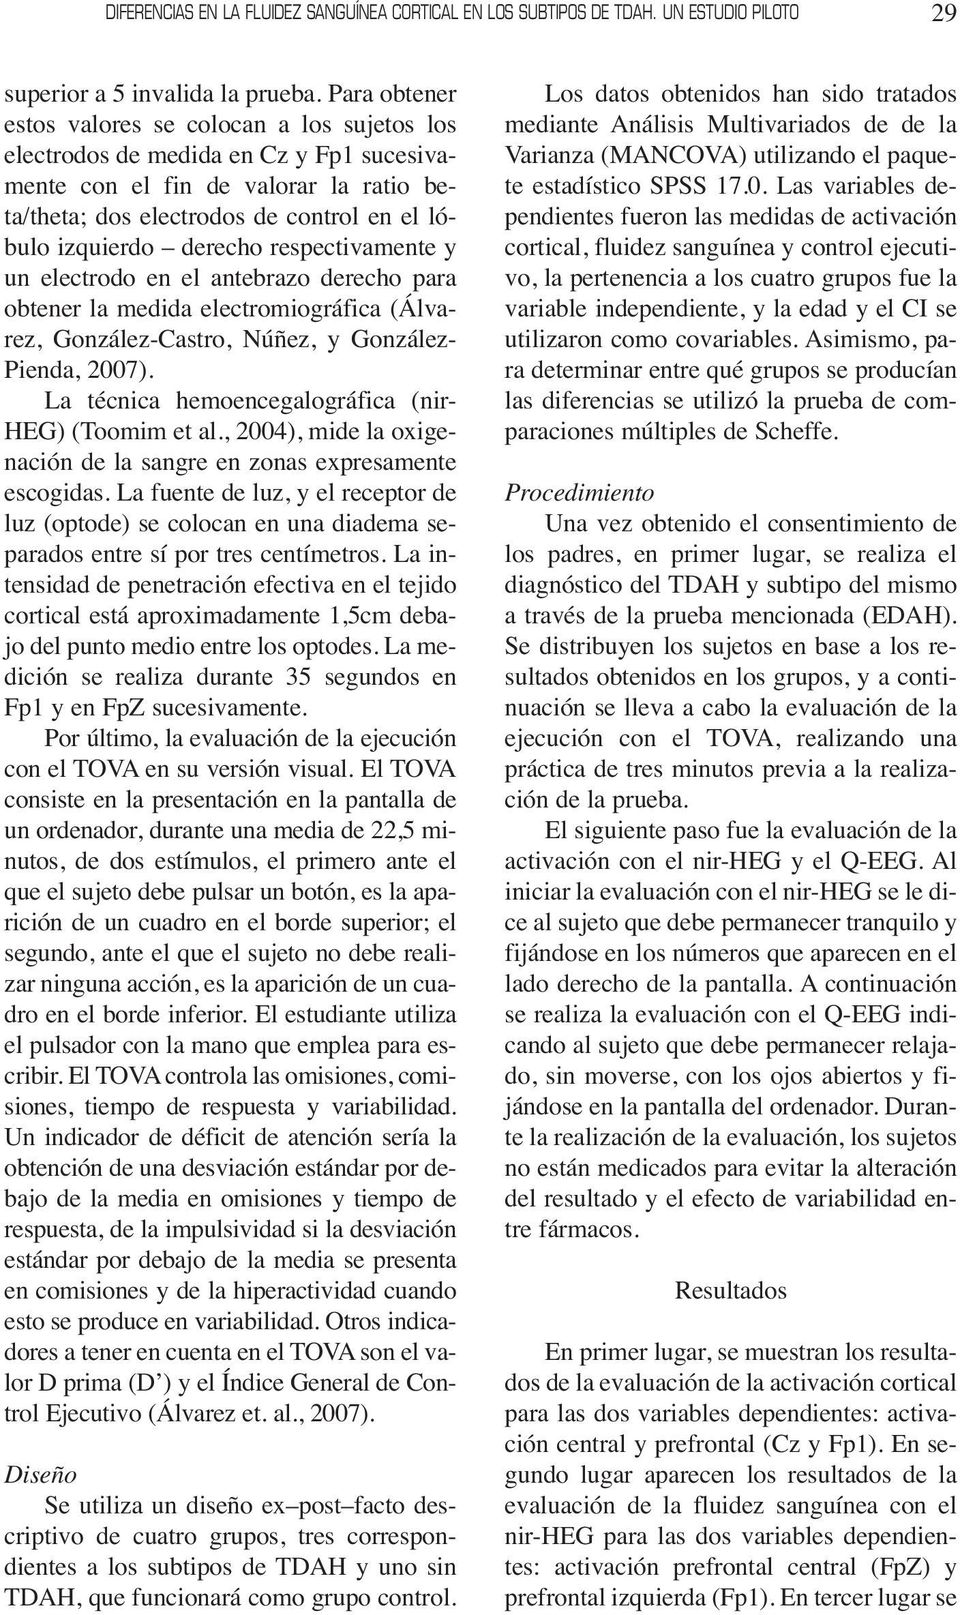 derecho respectivamente y un electrodo en el antebrazo derecho para obtener la medida electromiográfica (Álvarez, González-Castro, Núñez, y González- Pienda, 2007).